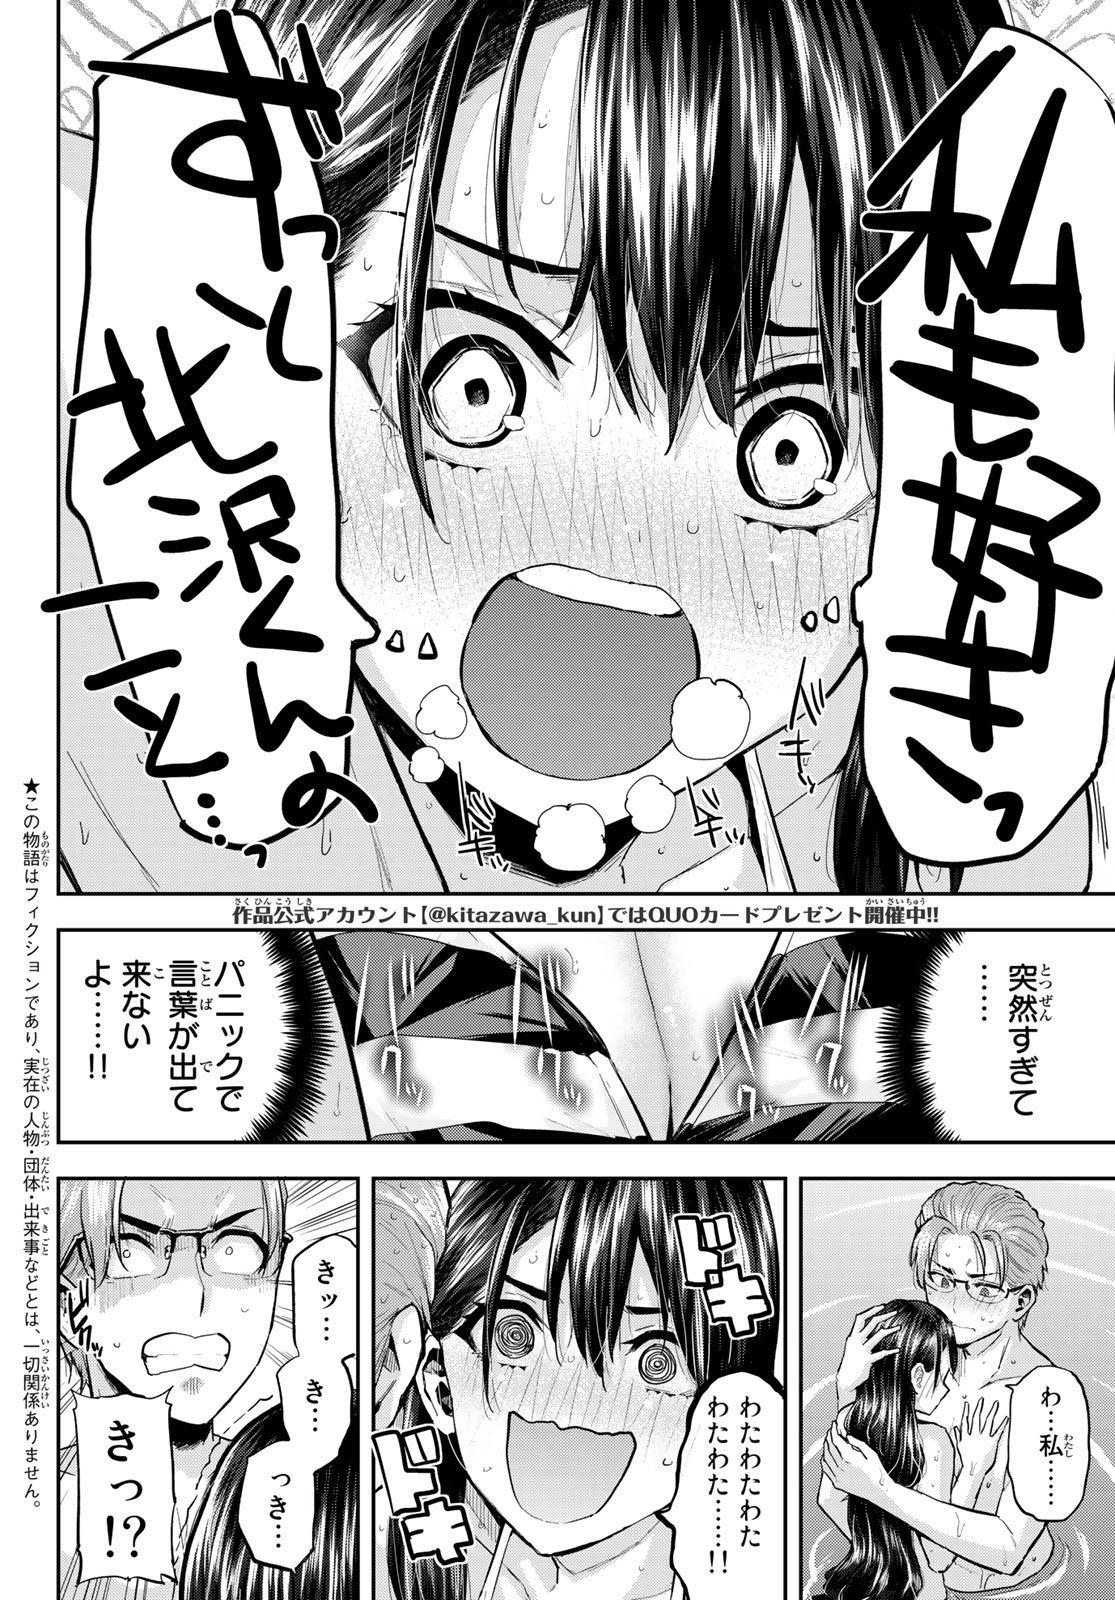 Kitazawa-kun wa A Class - Chapter 024 - Page 2